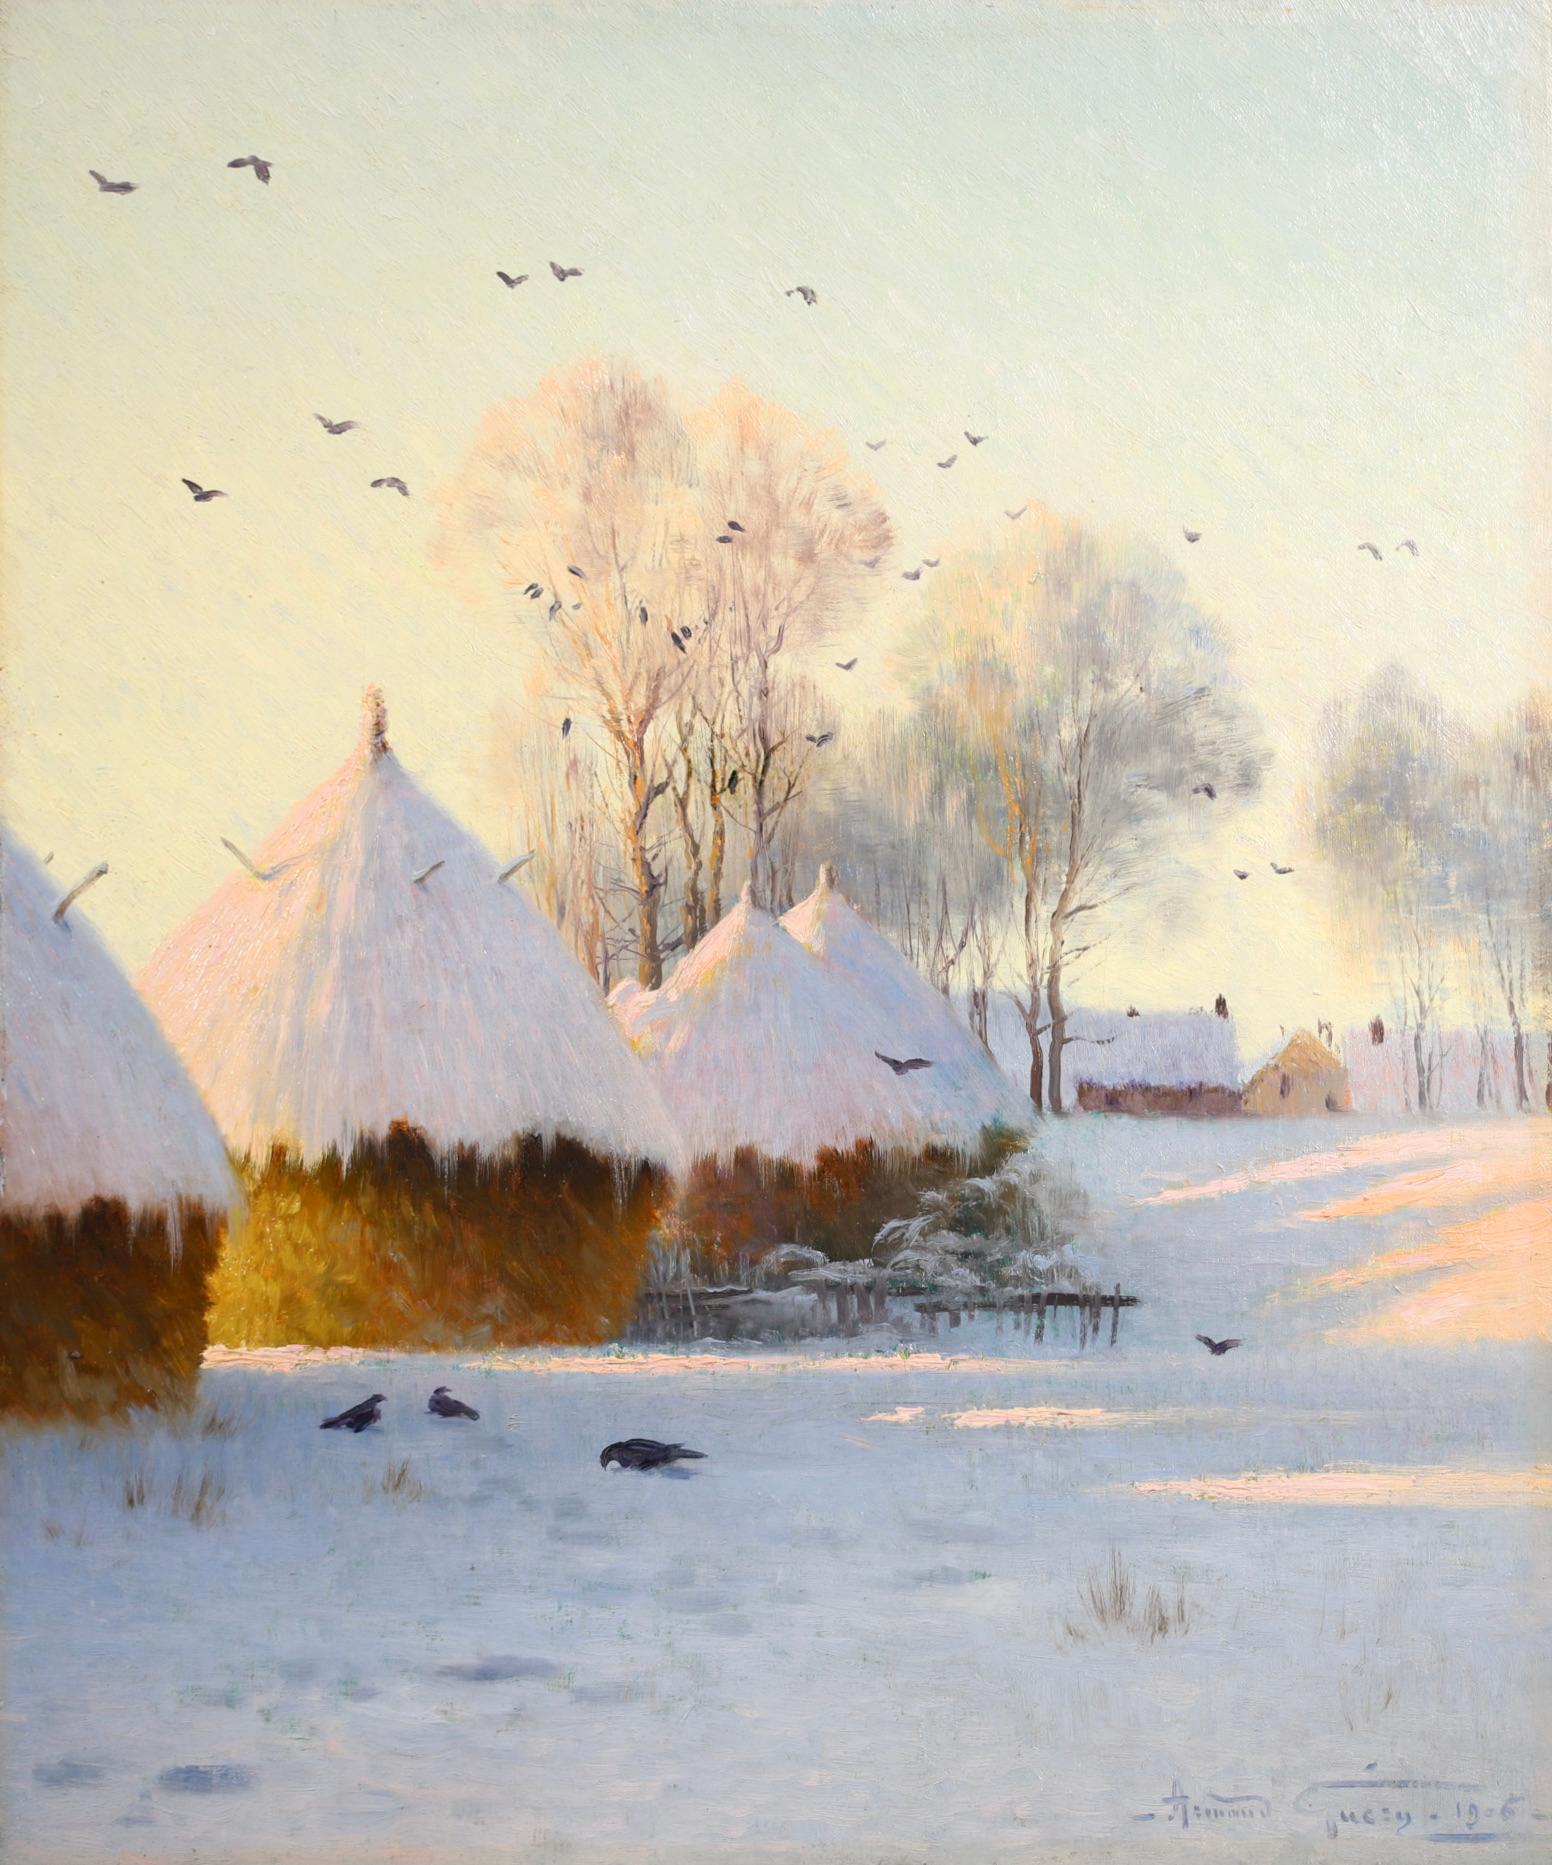 Signiert und datiert impressionistische Öl auf Leinwand Landschaft von Französisch Maler Armand Guery. Das Werk zeigt eine ländliche Winterszene mit schneebedeckten Heuschobern auf der linken Seite und den Bäumen und verschneiten Dächern des nahe